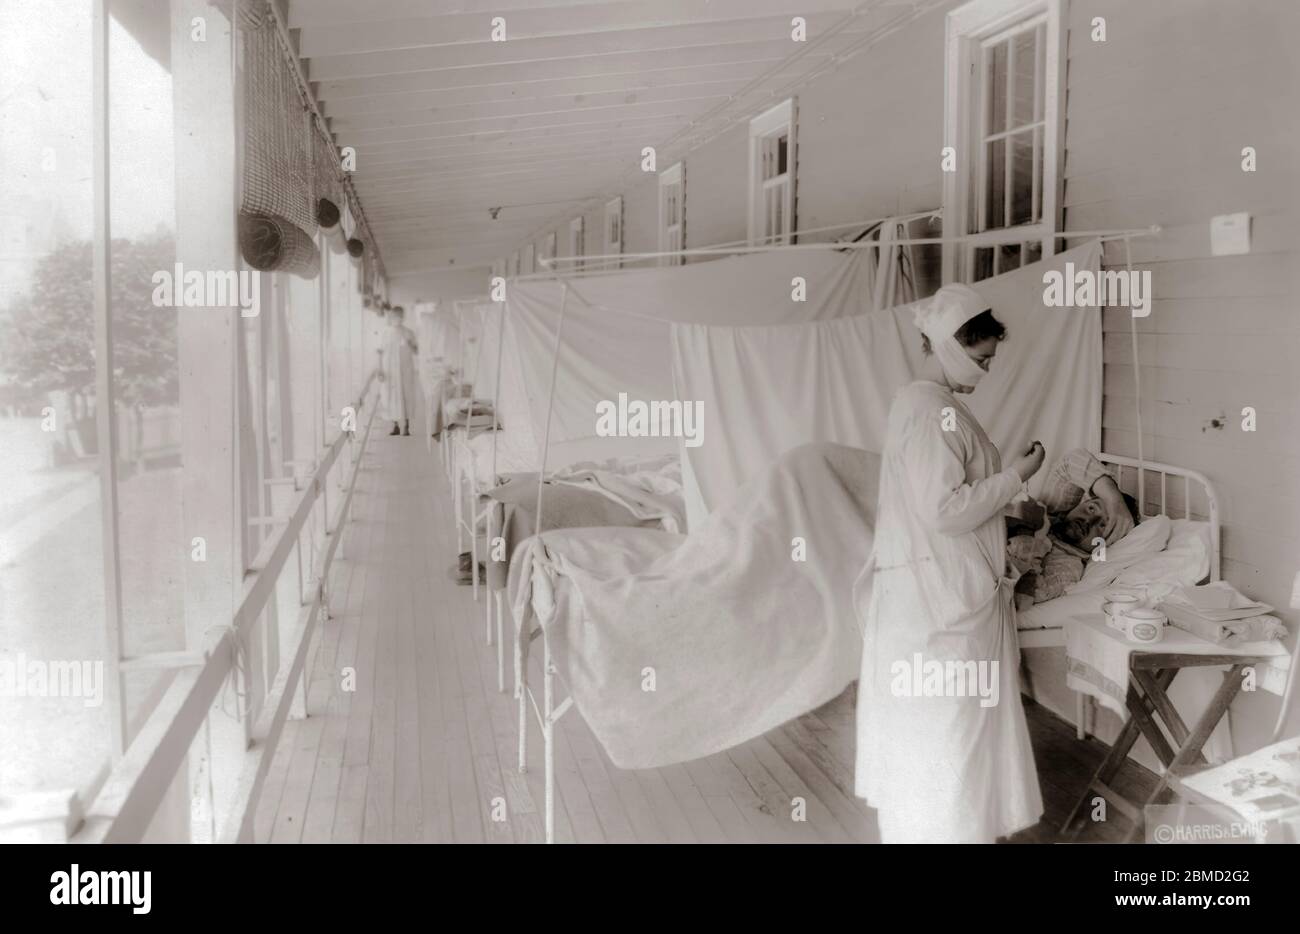 Innenraum des Red Cross House am U.S. General Hospital #16, New Haven, Conn. Während der Influenza-Epidemie. Die Betten sind durch Vorhänge isoliert. 1918. Stockfoto